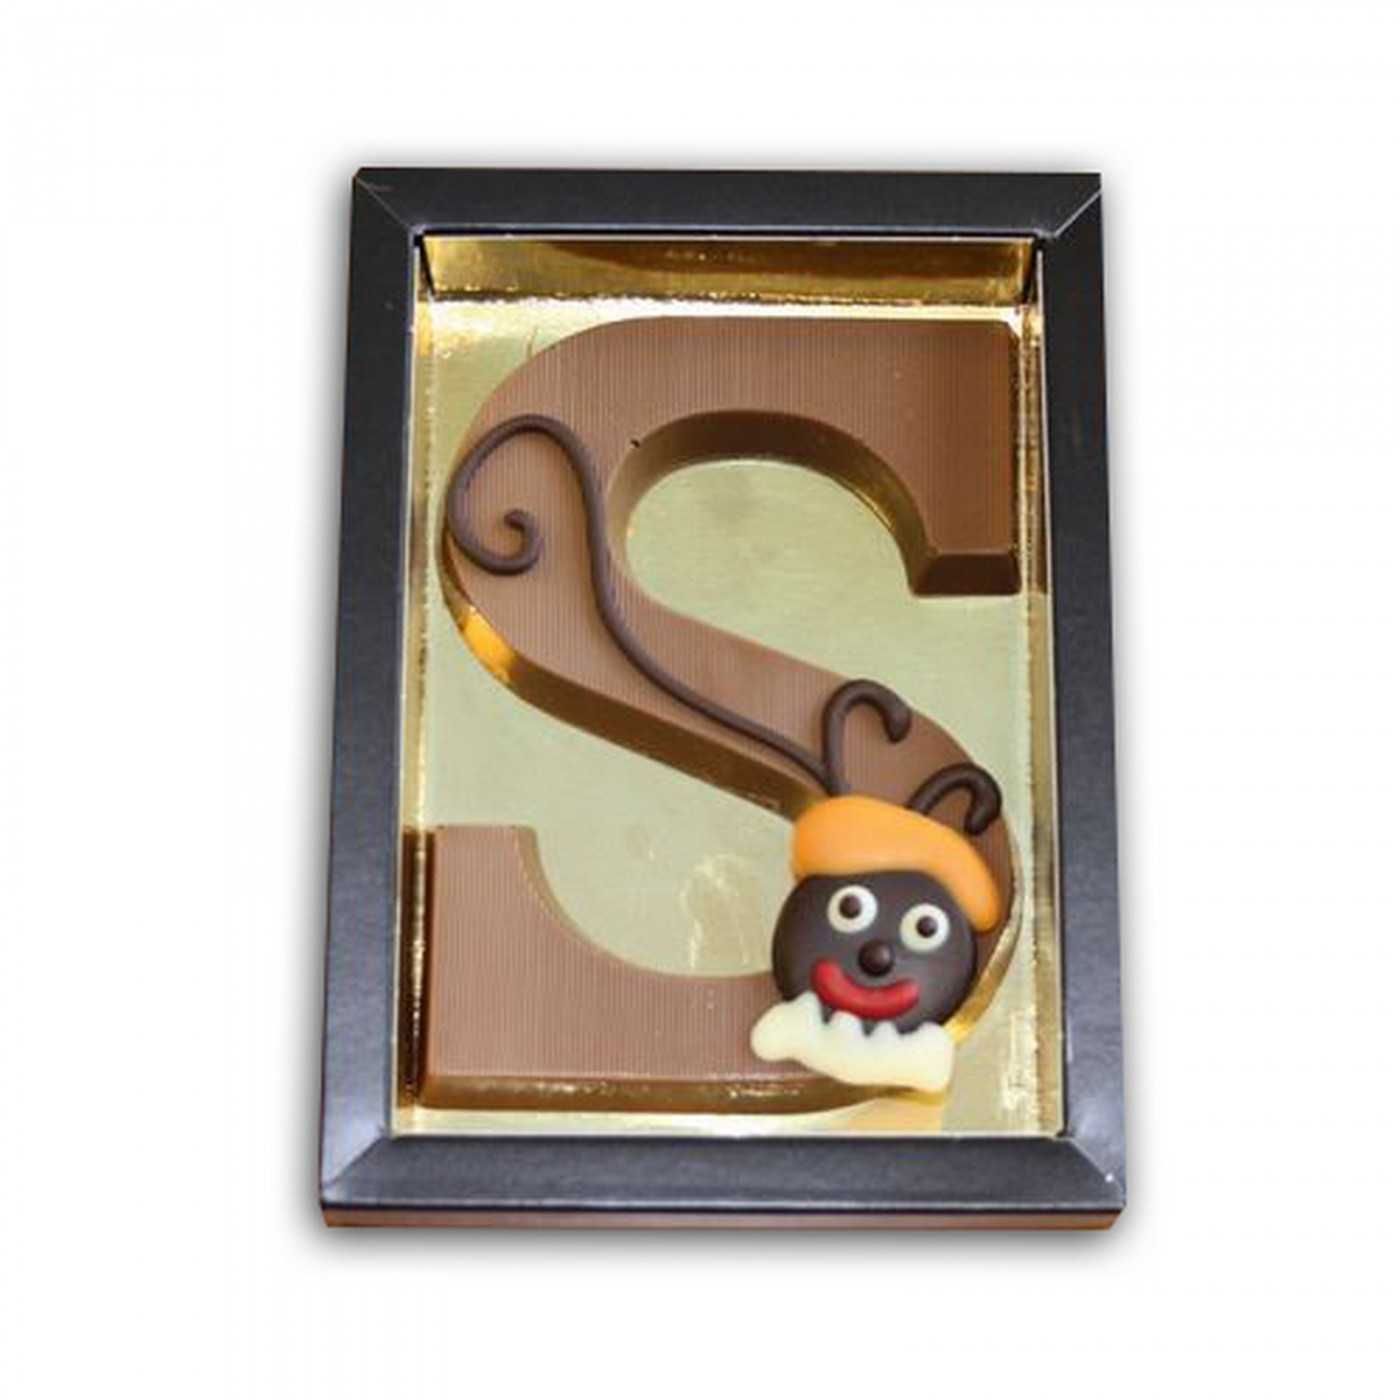 MELK S Chocolade Letter Klein Deco 120g 6st